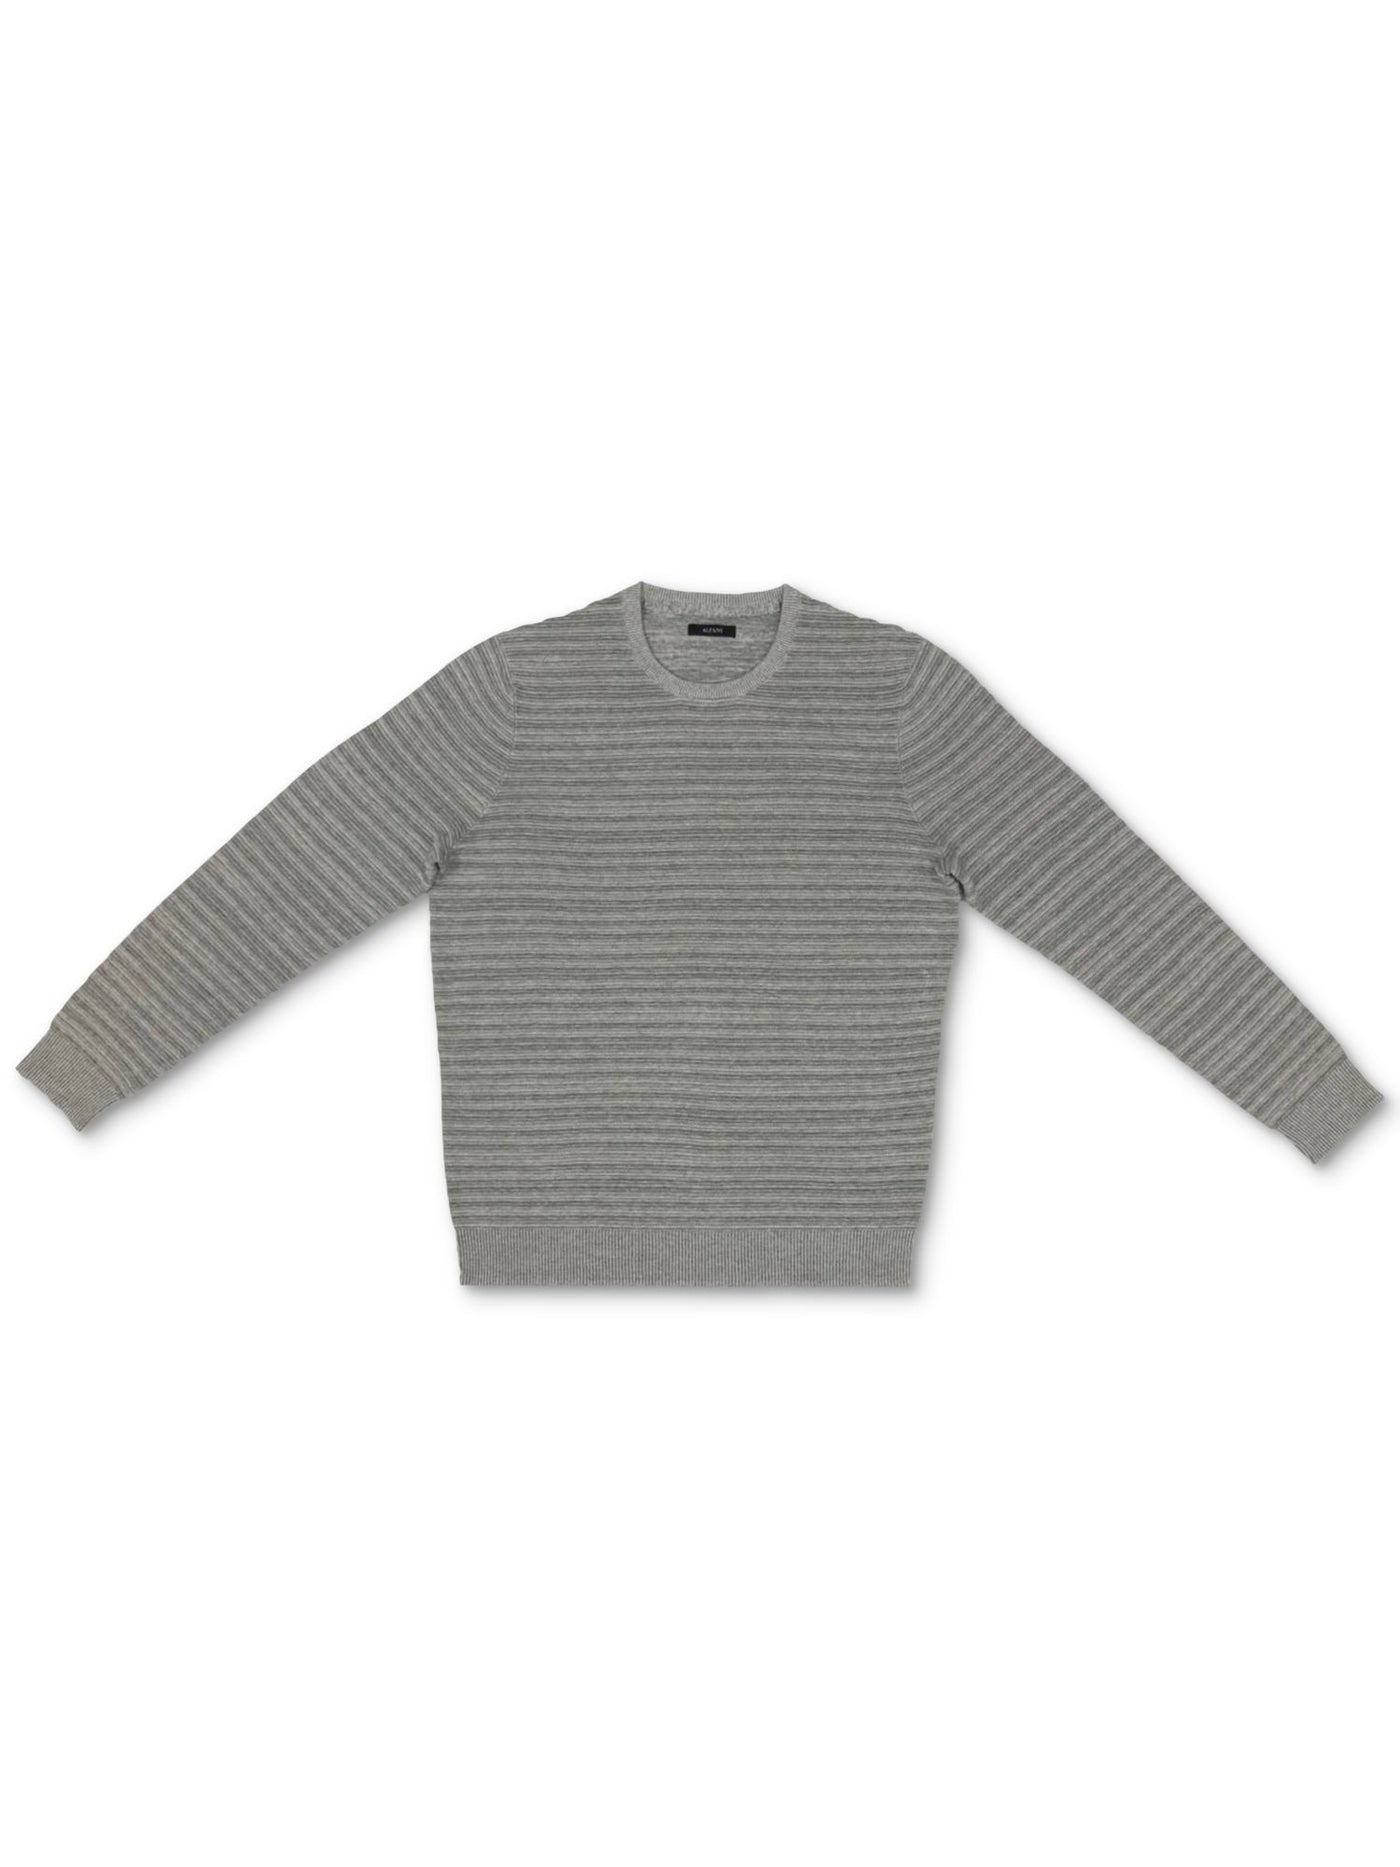 ALFANI Mens Gray Sweater XXL